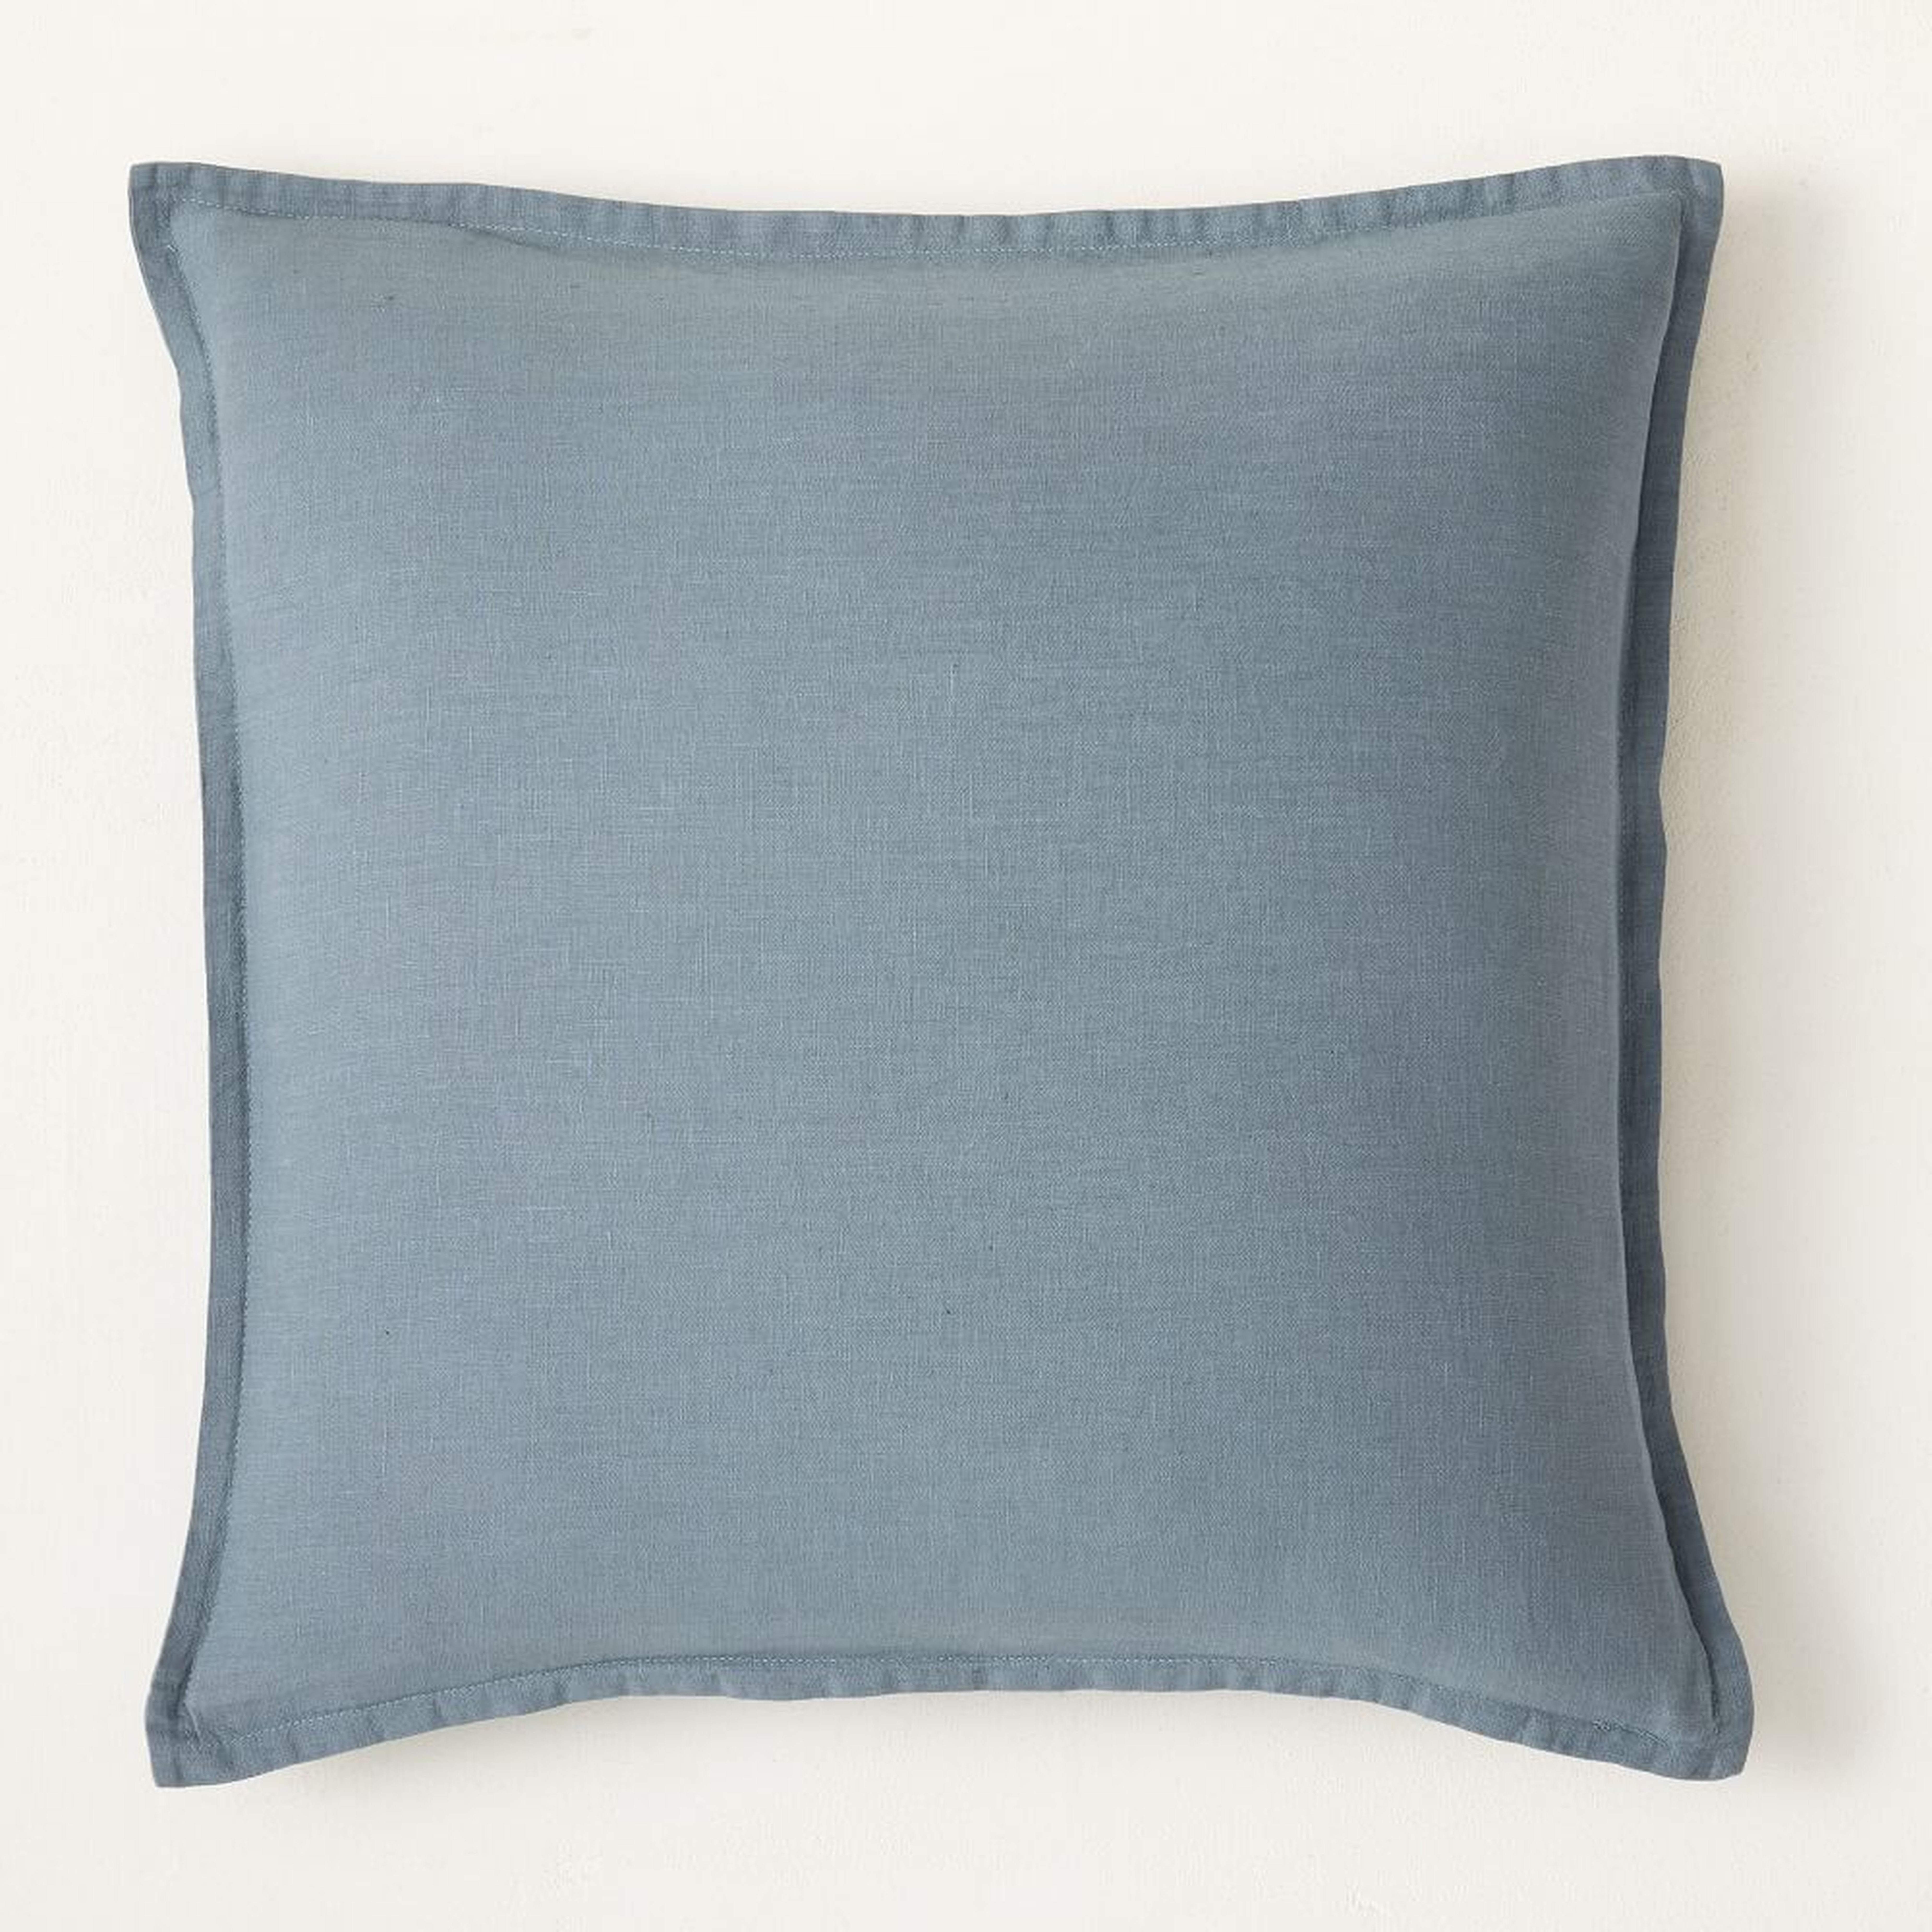 European Flax Linen Pillow Cover, 18"x18", Ocean - West Elm